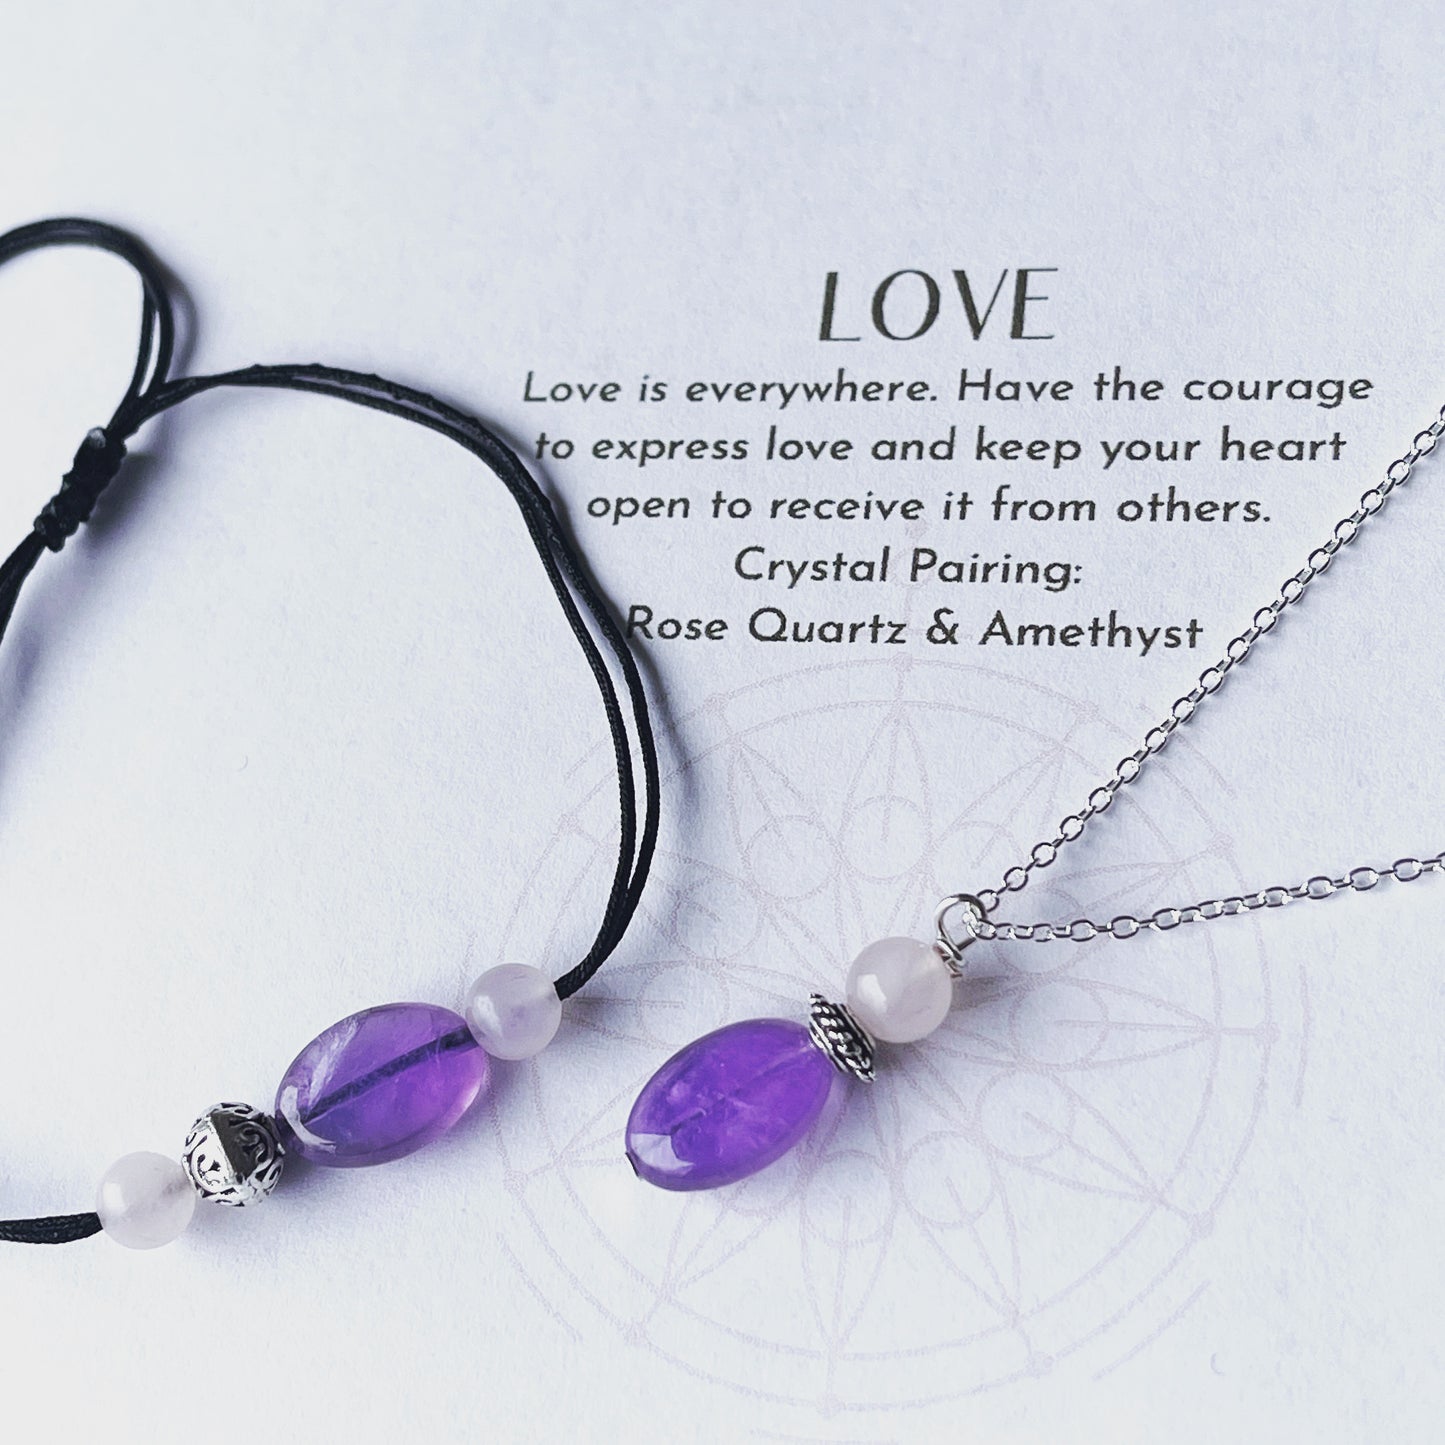 Rose Quartz Amethyst Bracelet for Love and Luck